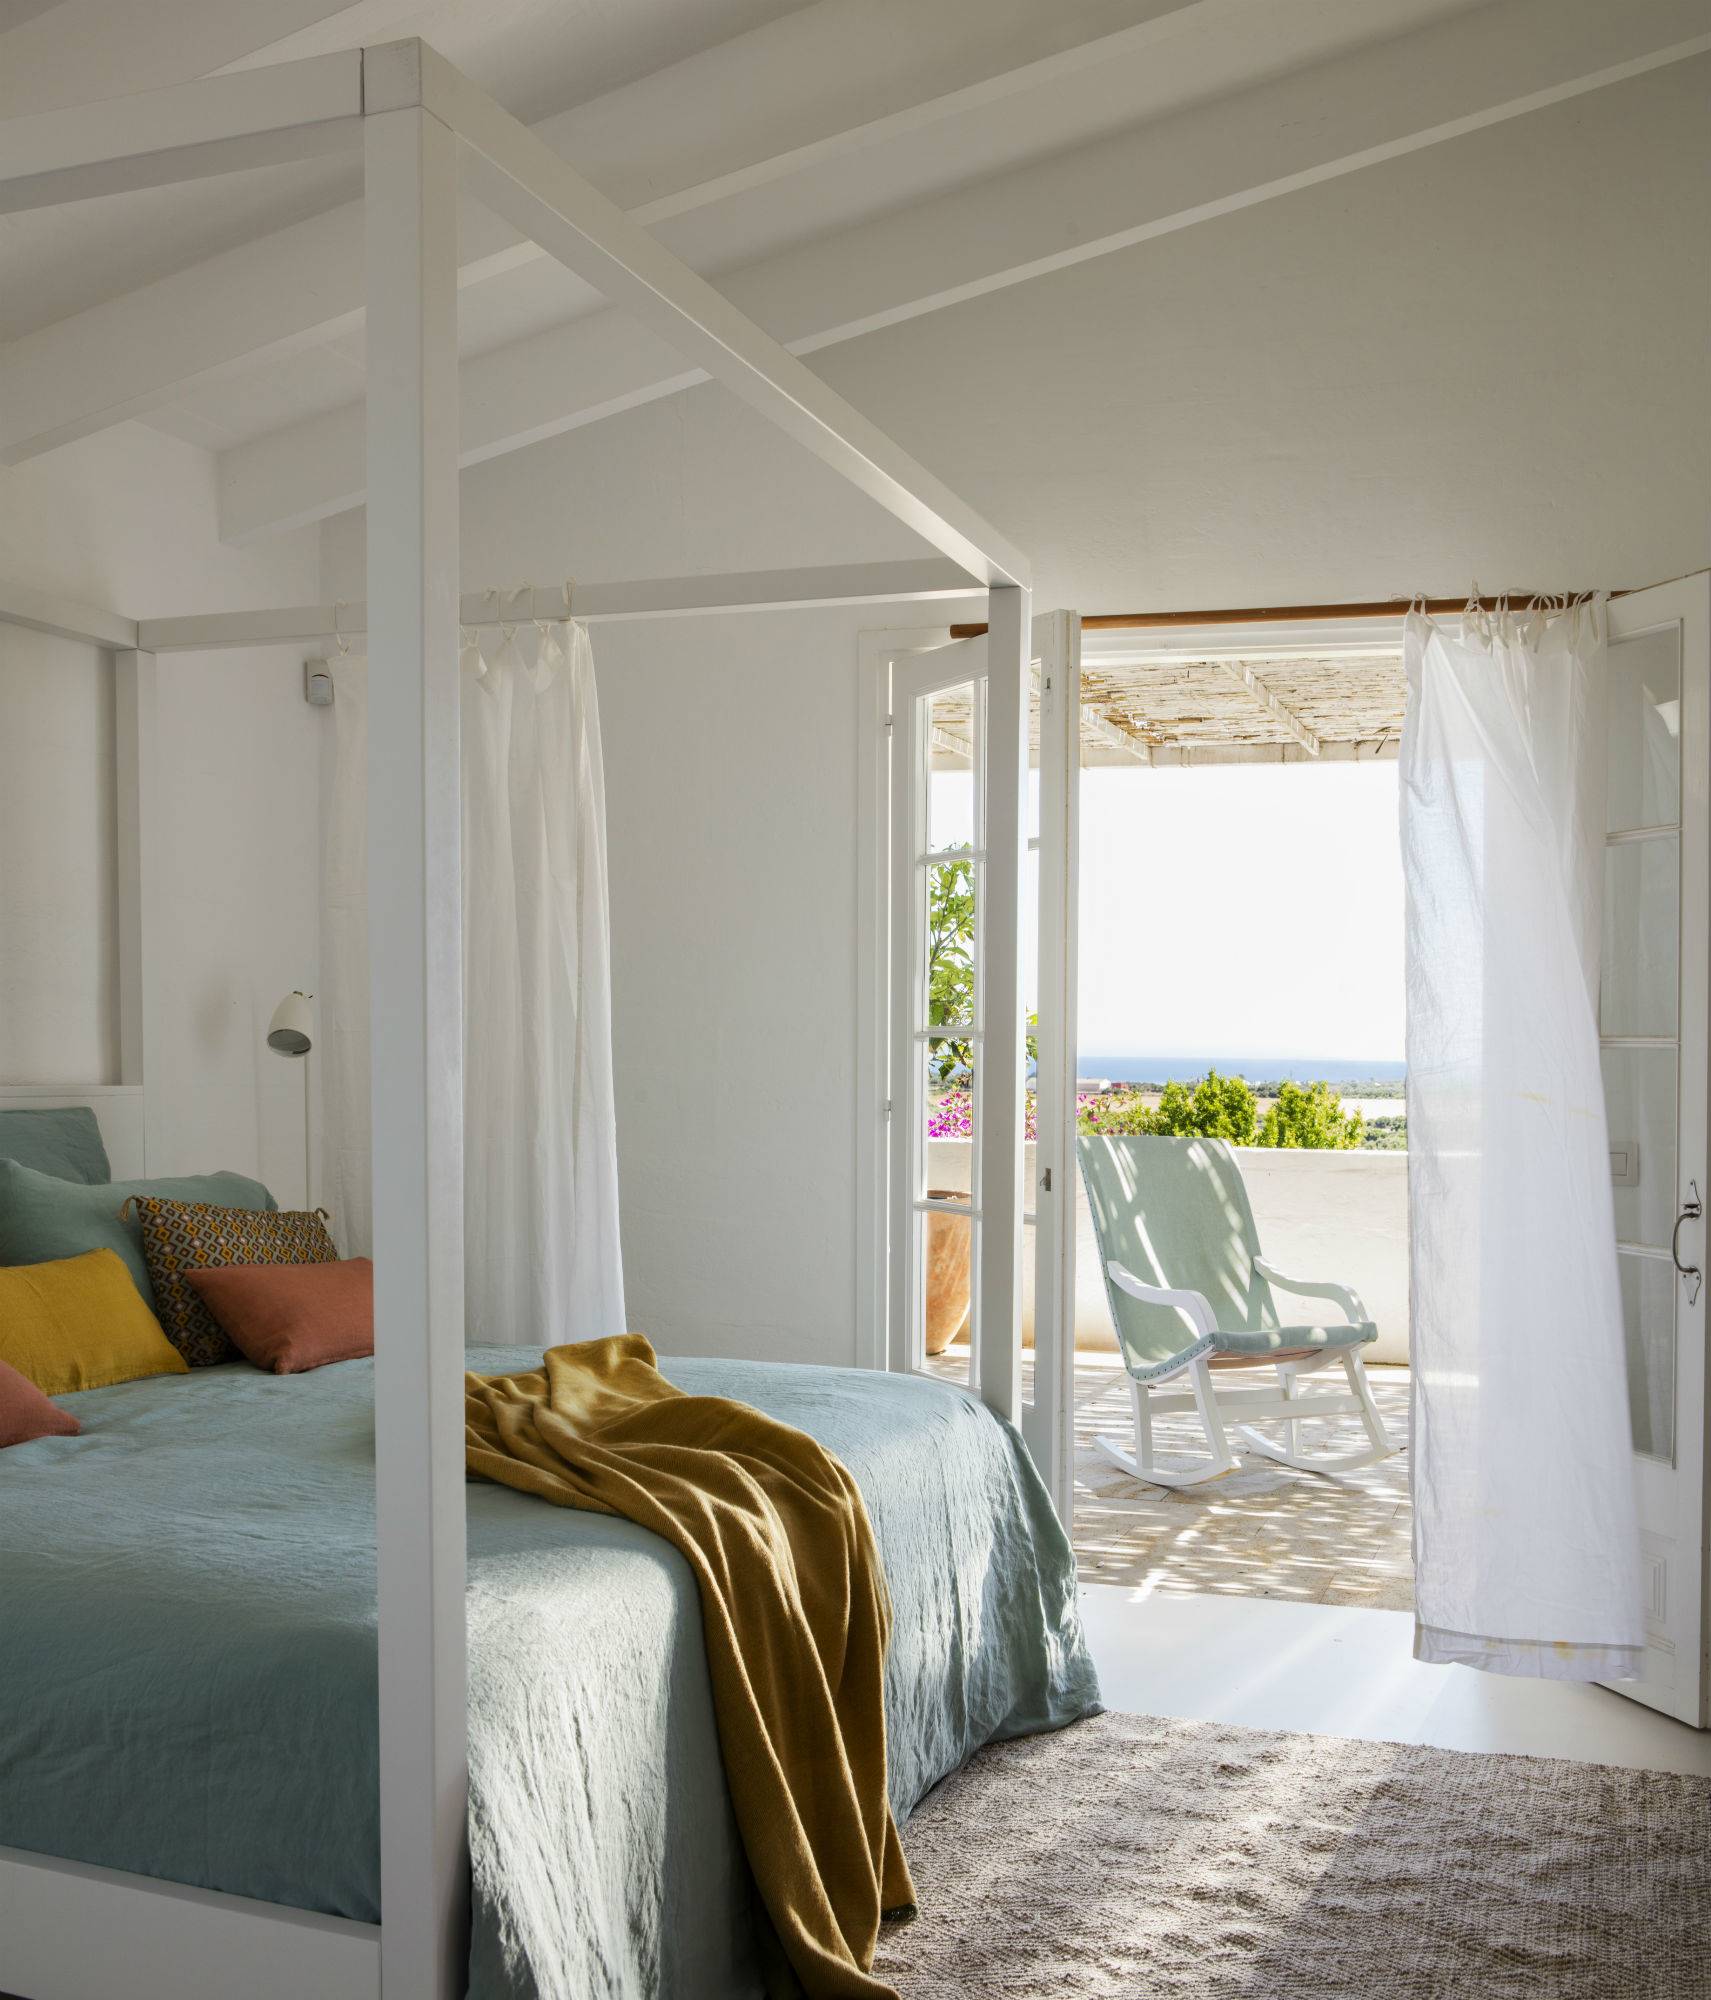 Dormitorio veraniego menorquín en tonos verdes azulados con vistas al mar